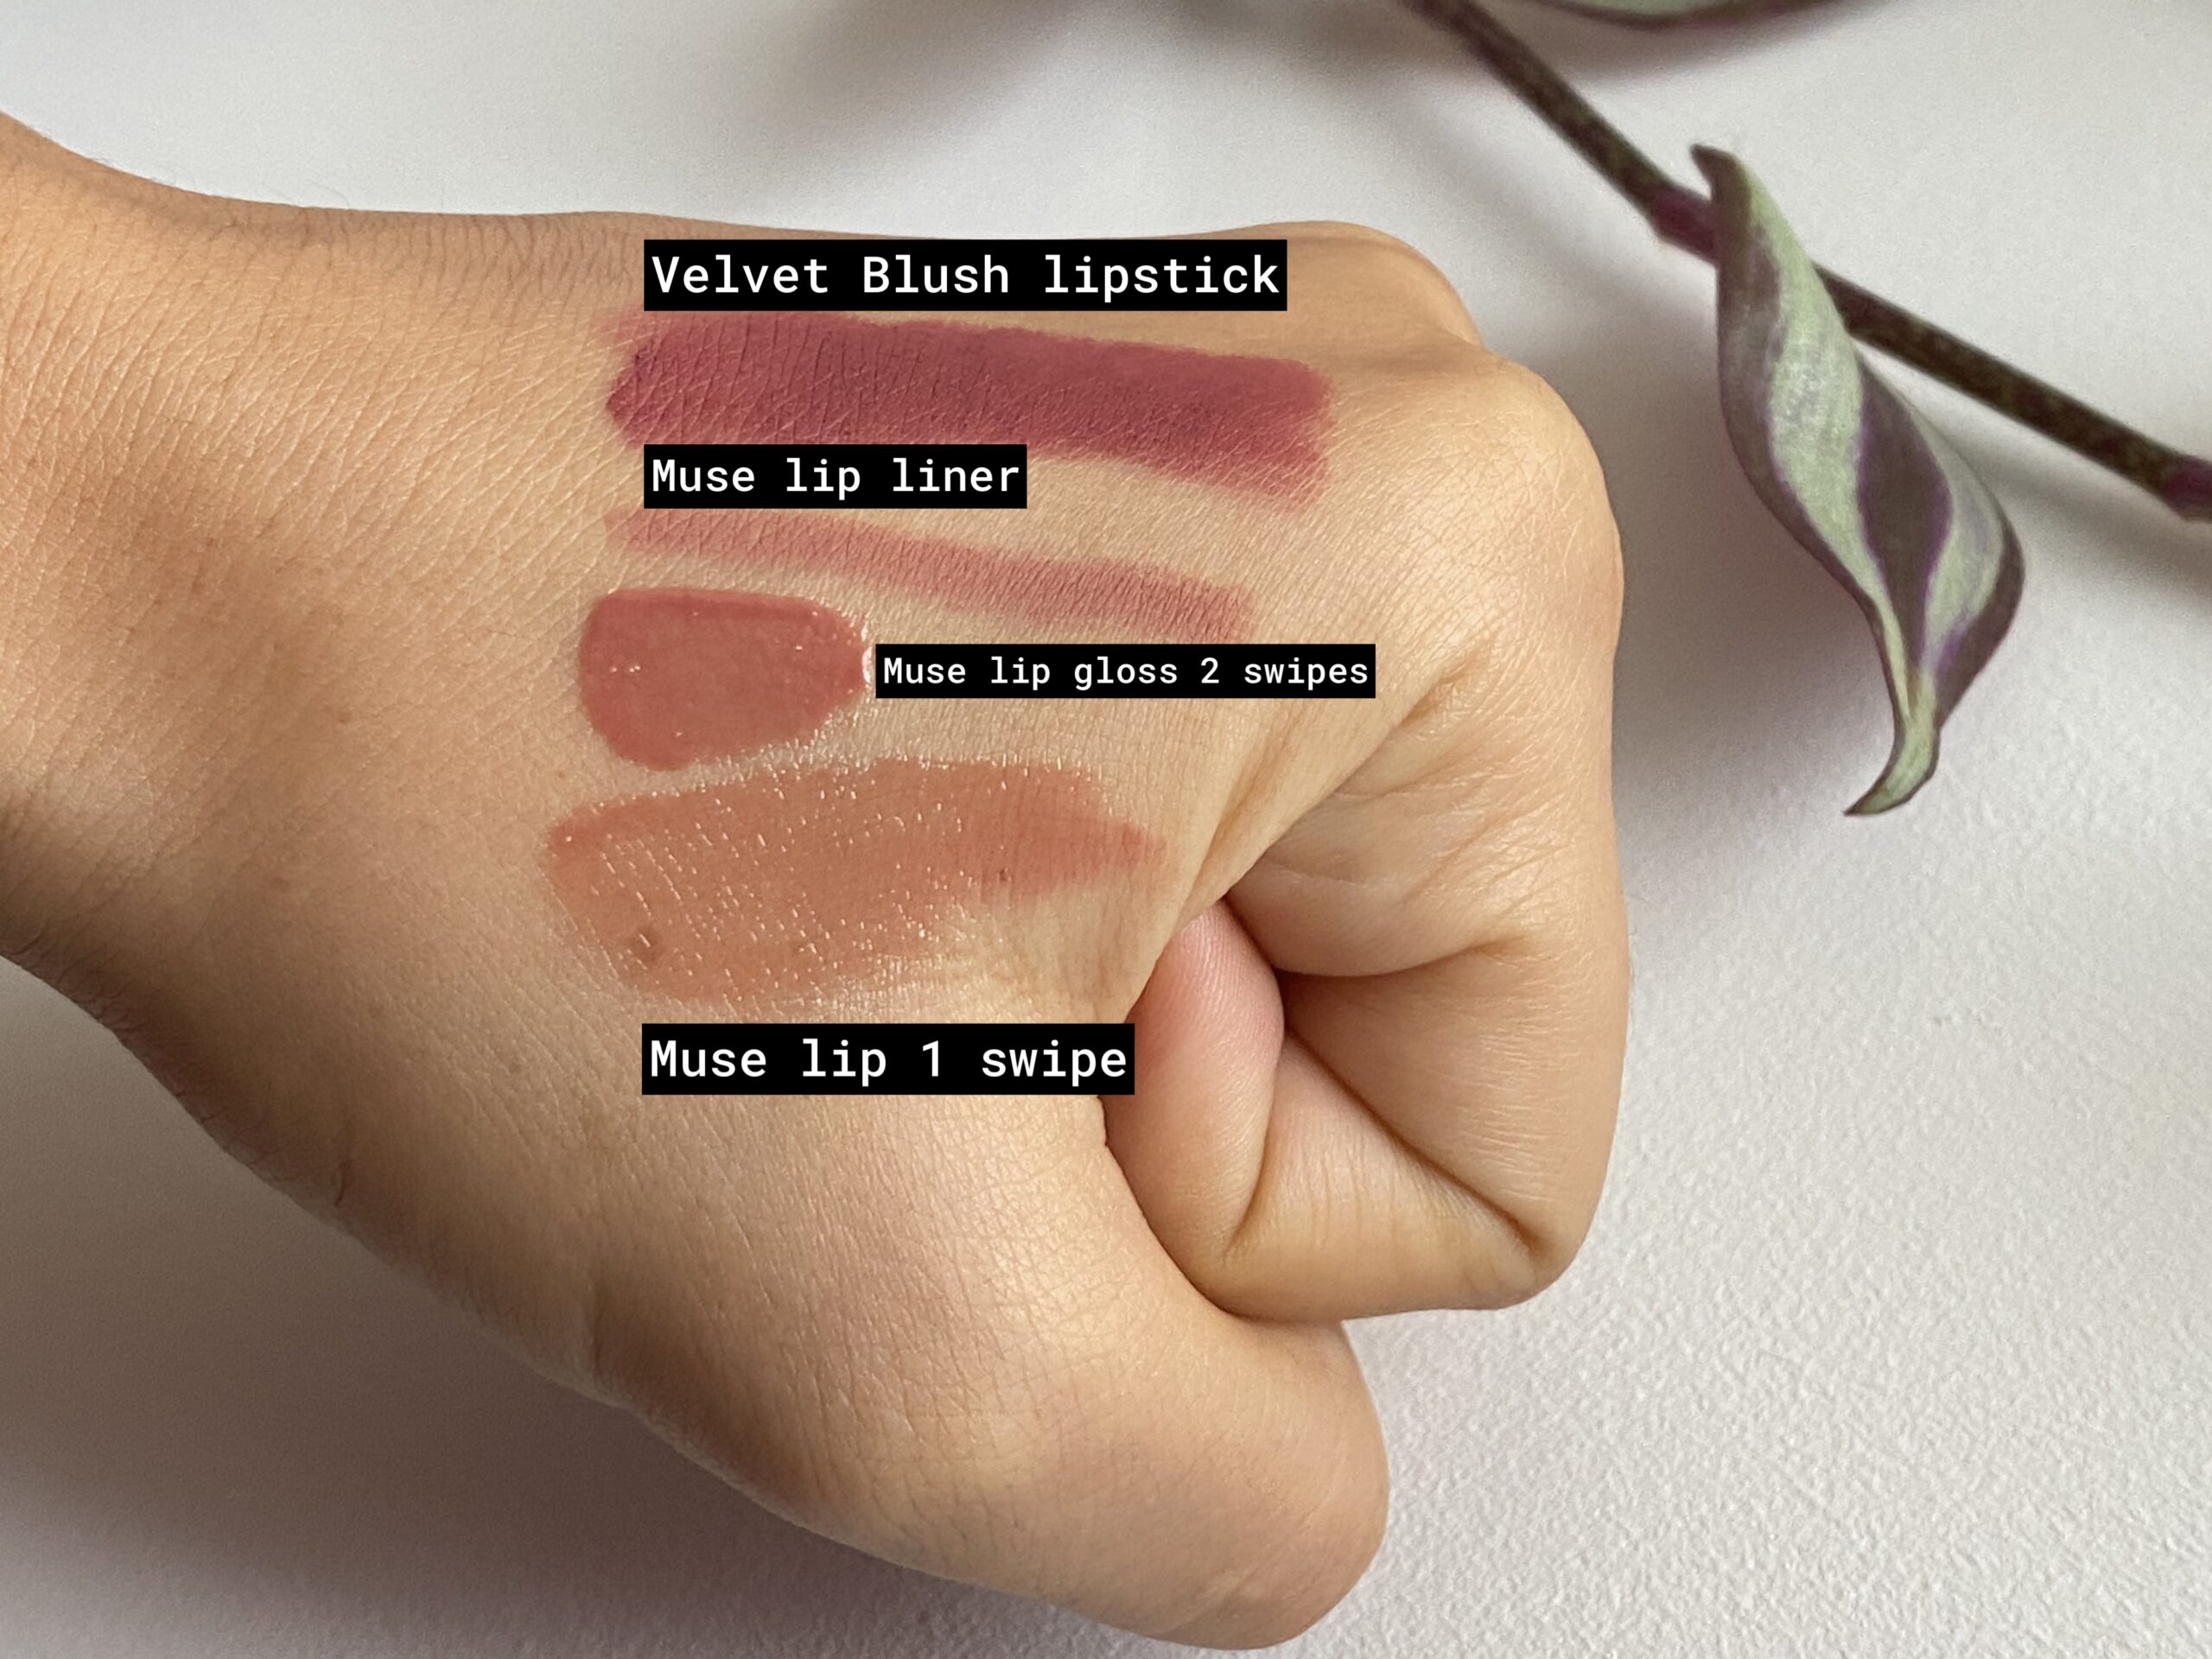 New Lisa Eldridge lipstick review: Velvet Blush and Muse Embrace lip gloss